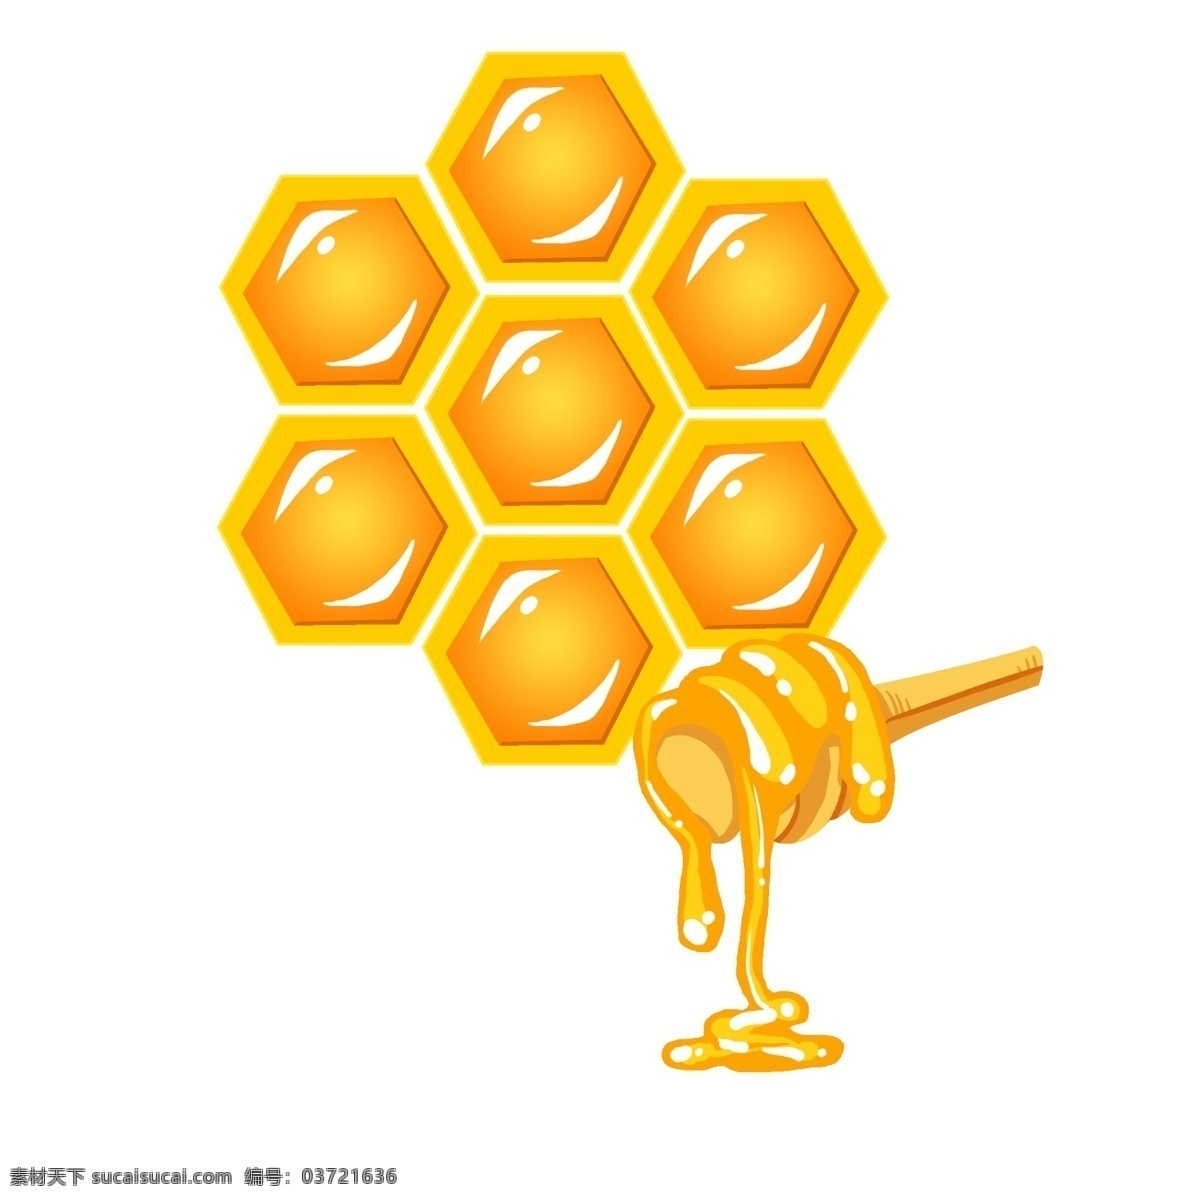 手绘 蜂巢 蜂蜜 画布 美味蜂蜜 卡通蜂巢 卡通蜂蜜 蜂蜜棒 甜食 甜品 蜂王浆 蜜浆 蜂巢插画 酿蜜